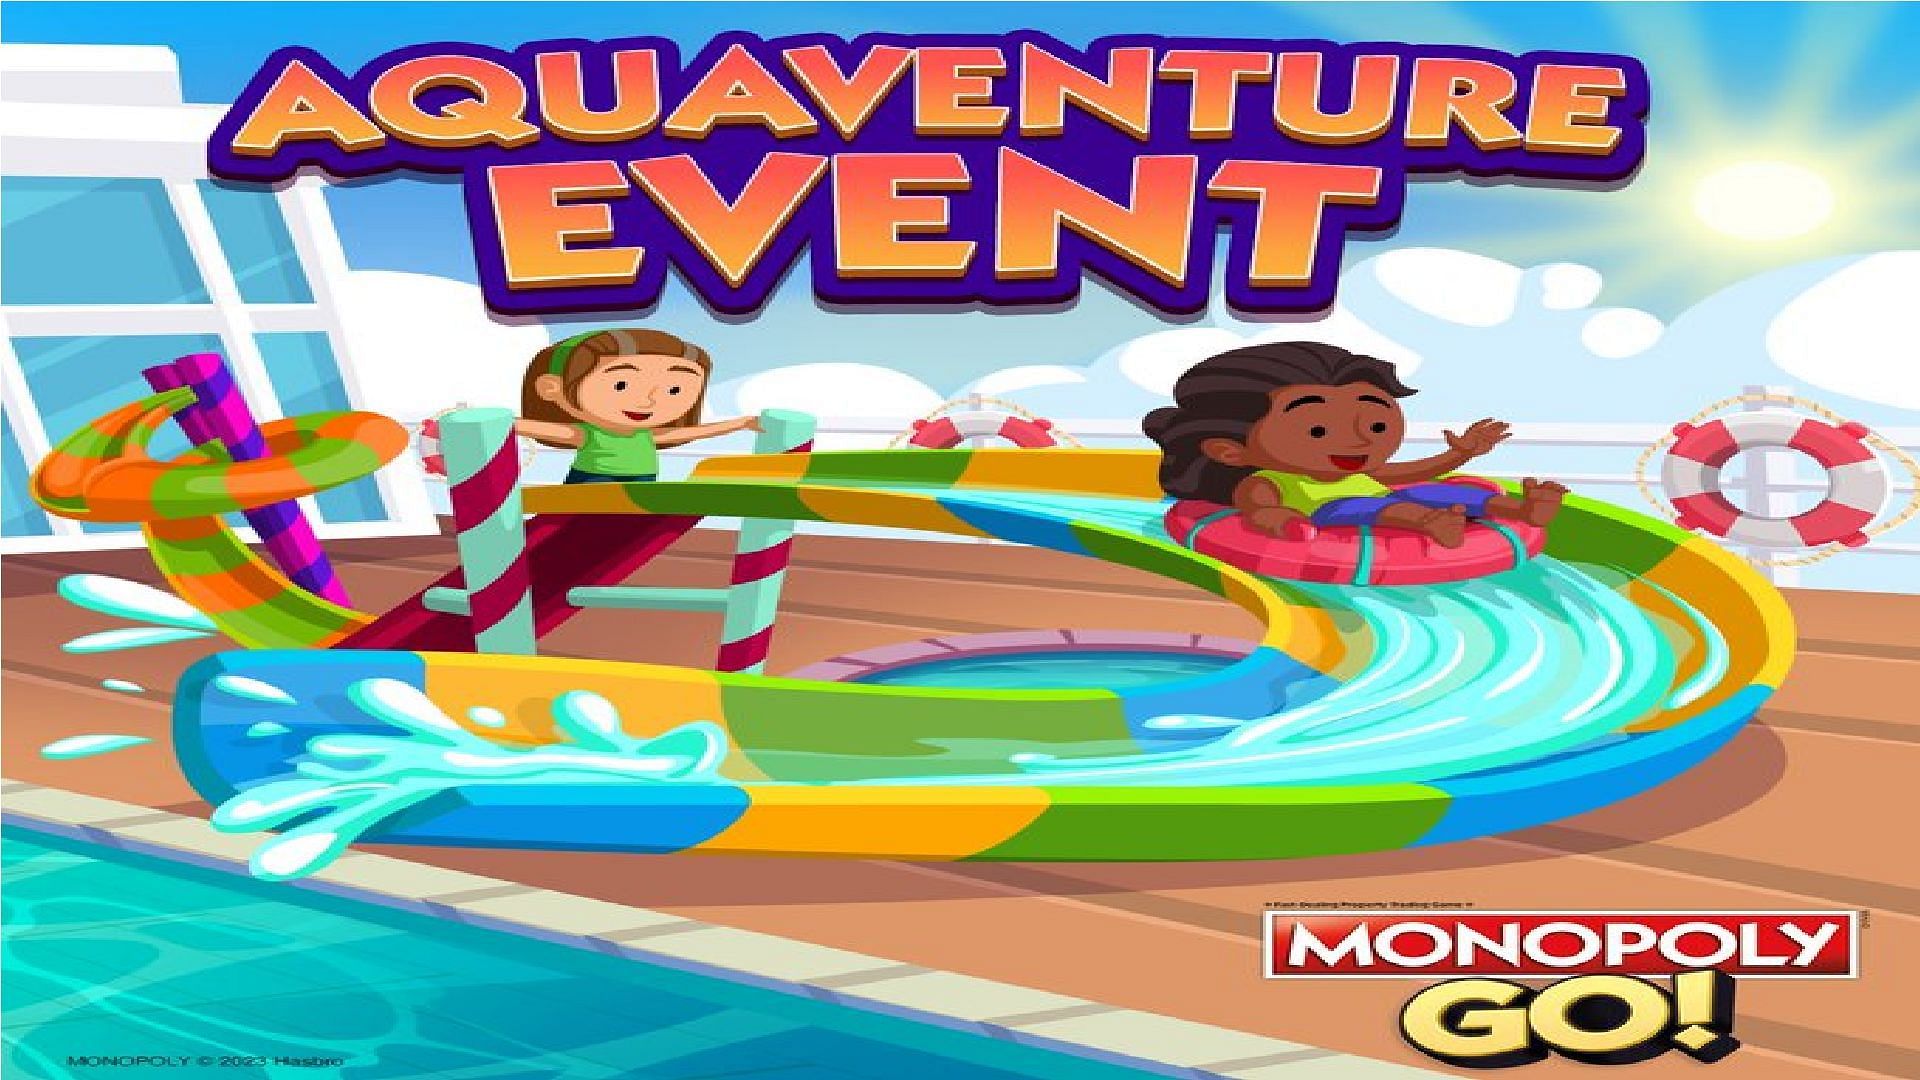 Monopoly Go, Monopoly Go Aquaventure Event, Aquaventure Event